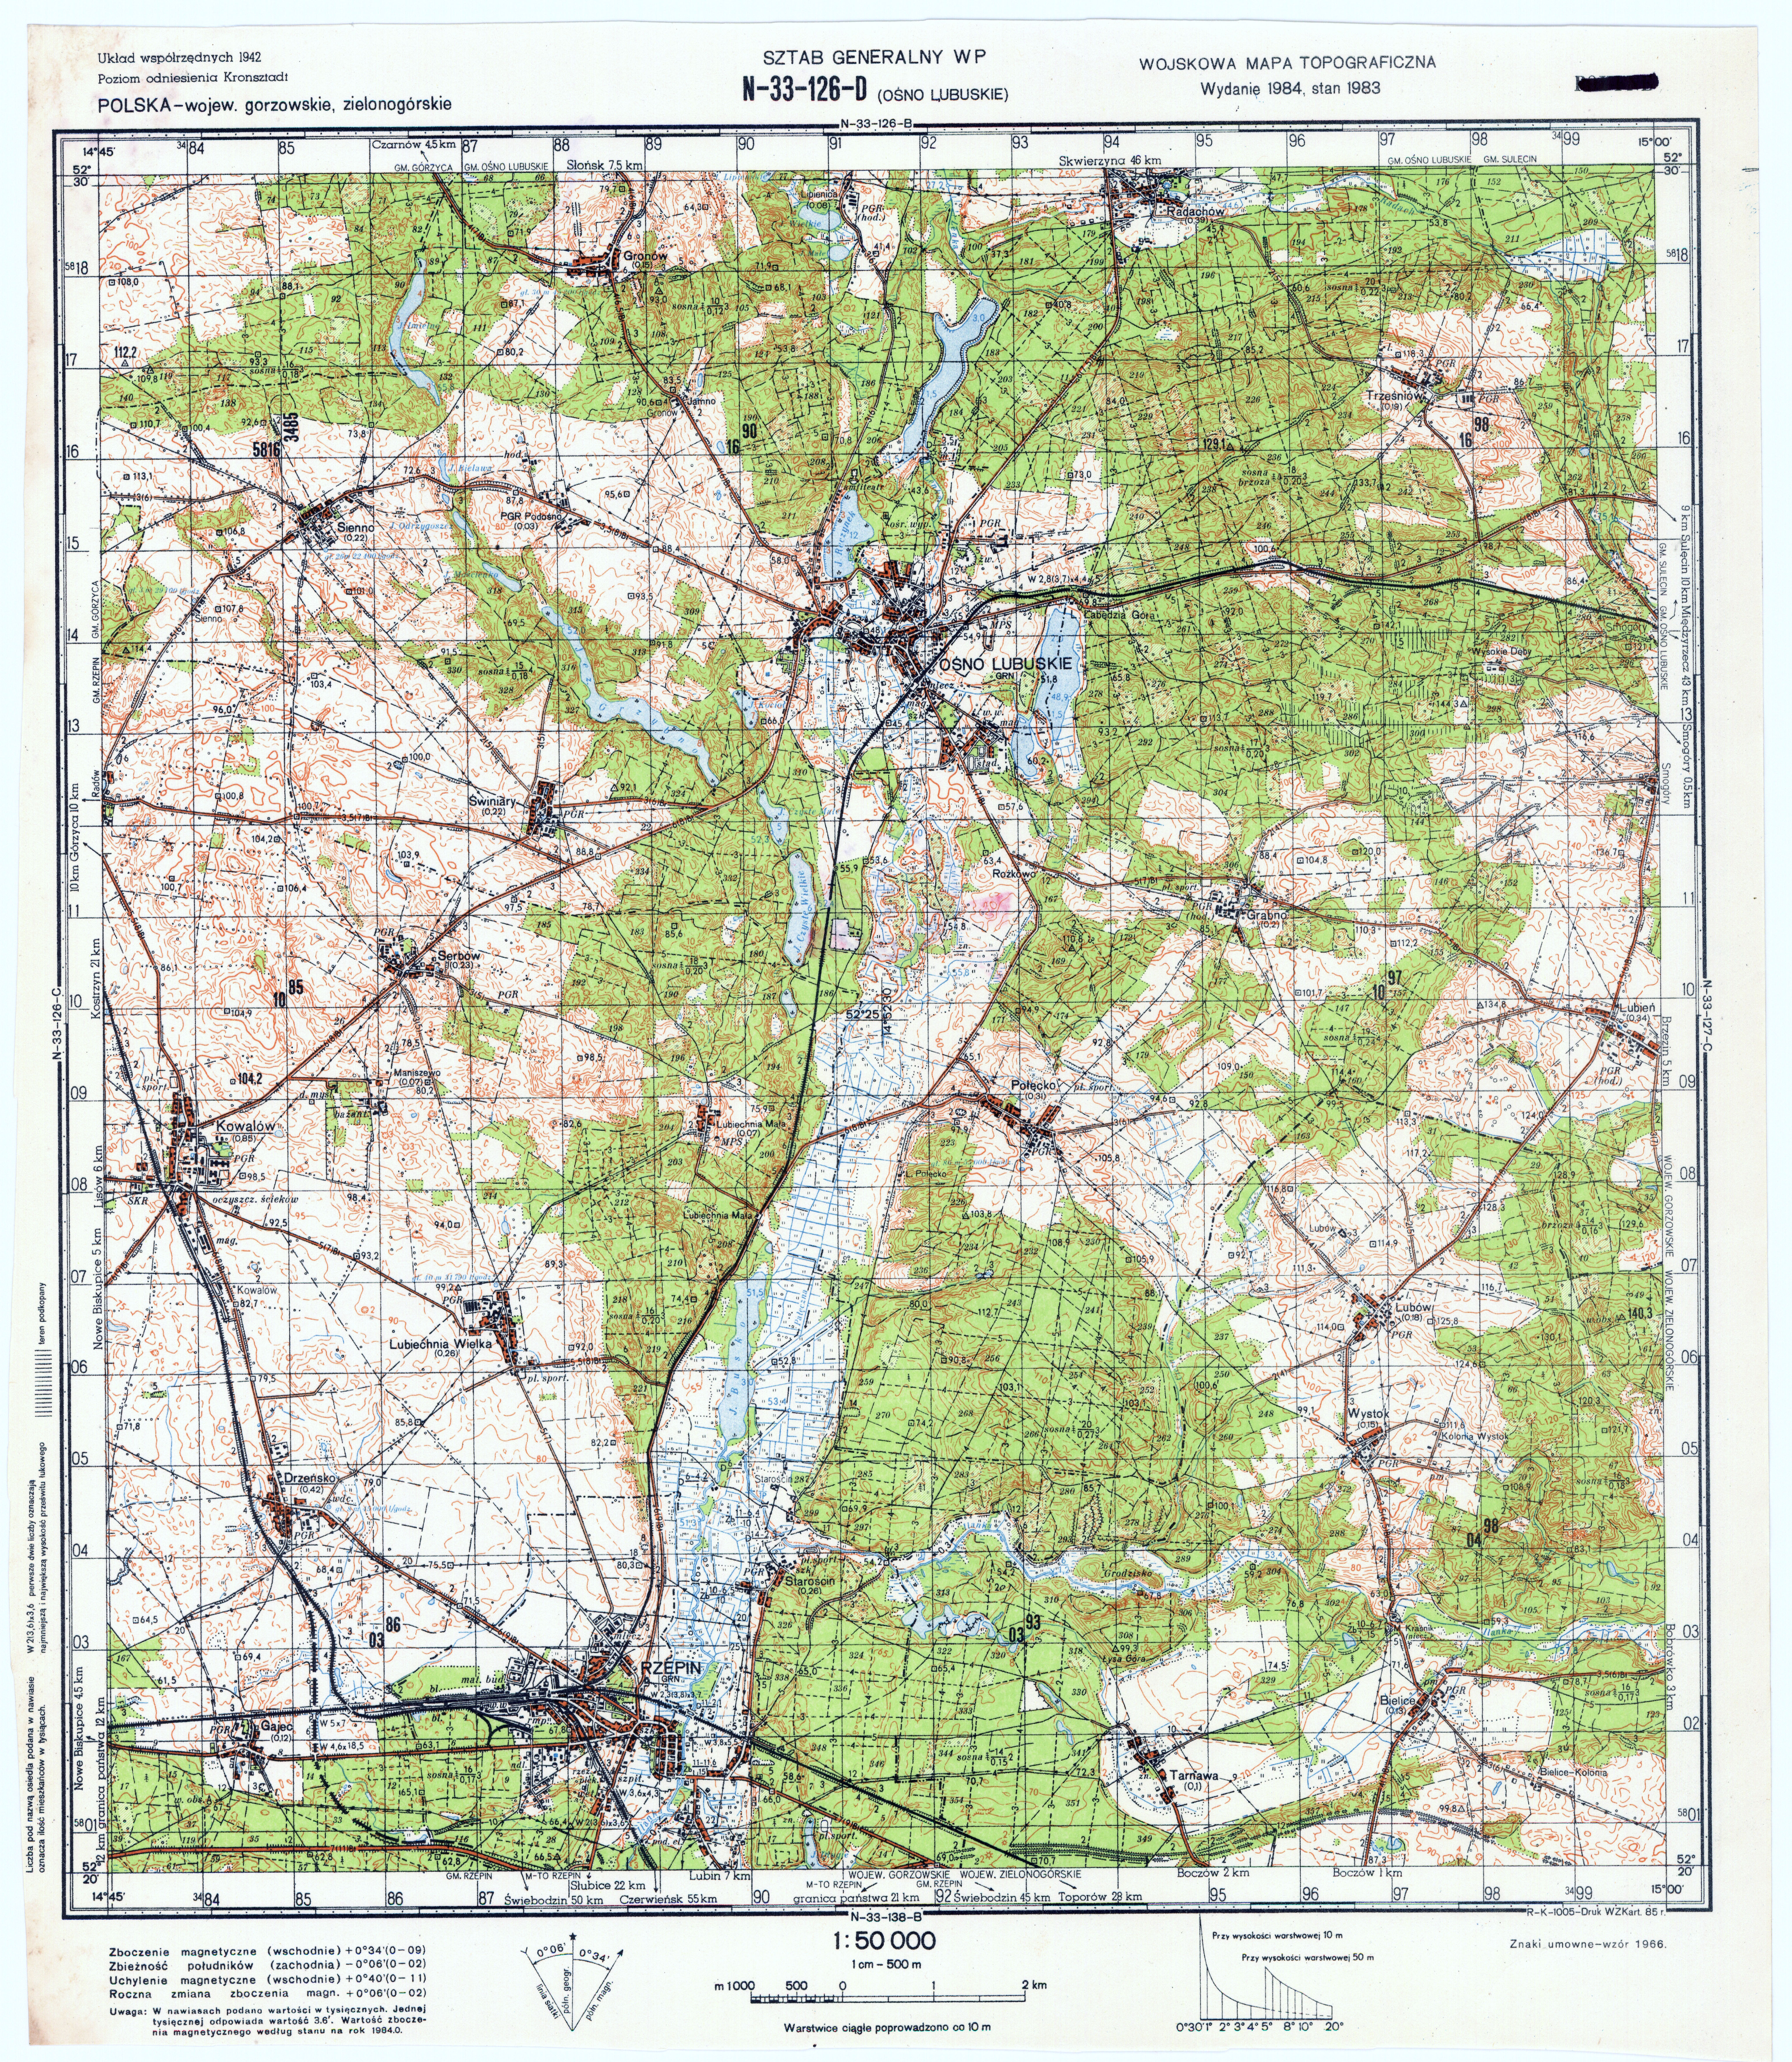 Mapy topograficzne LWP 1_50 000 - N-33-126-D_OSNO_LUBUSKIE_1985.jpg